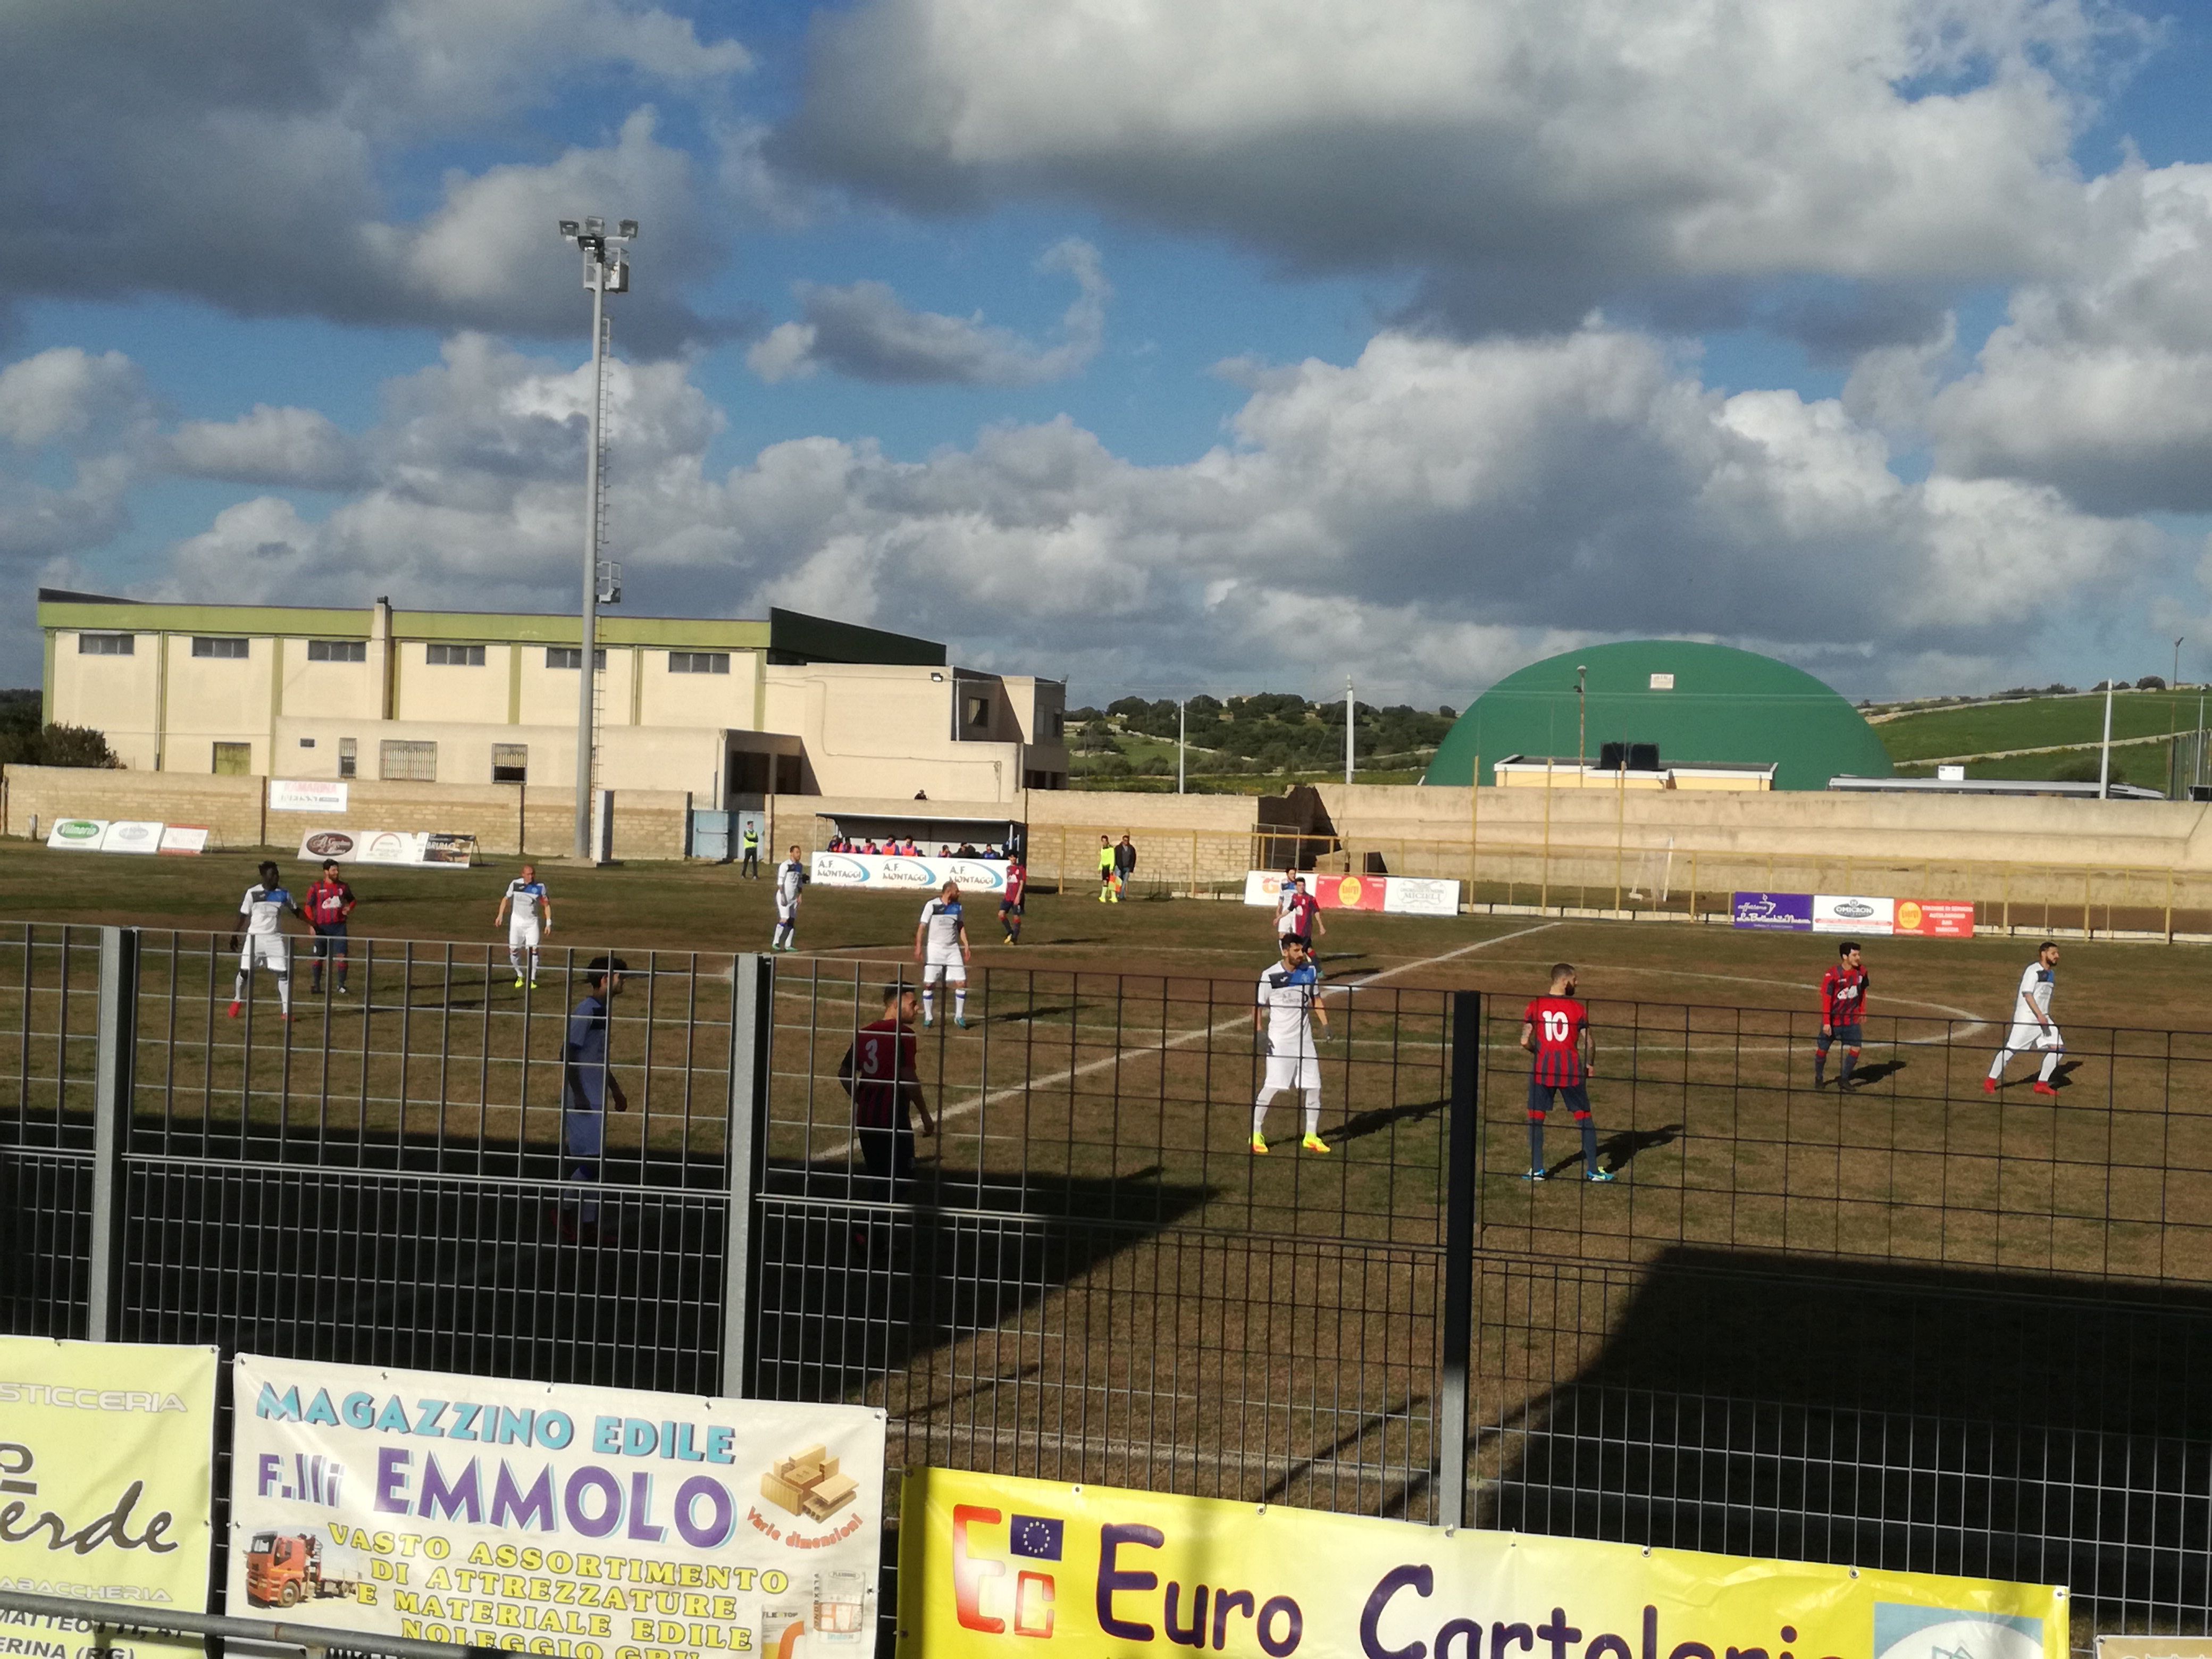  Calcio, Promozione: Leone travolgente, il Santa Croce asfalta il Modica (4-1)